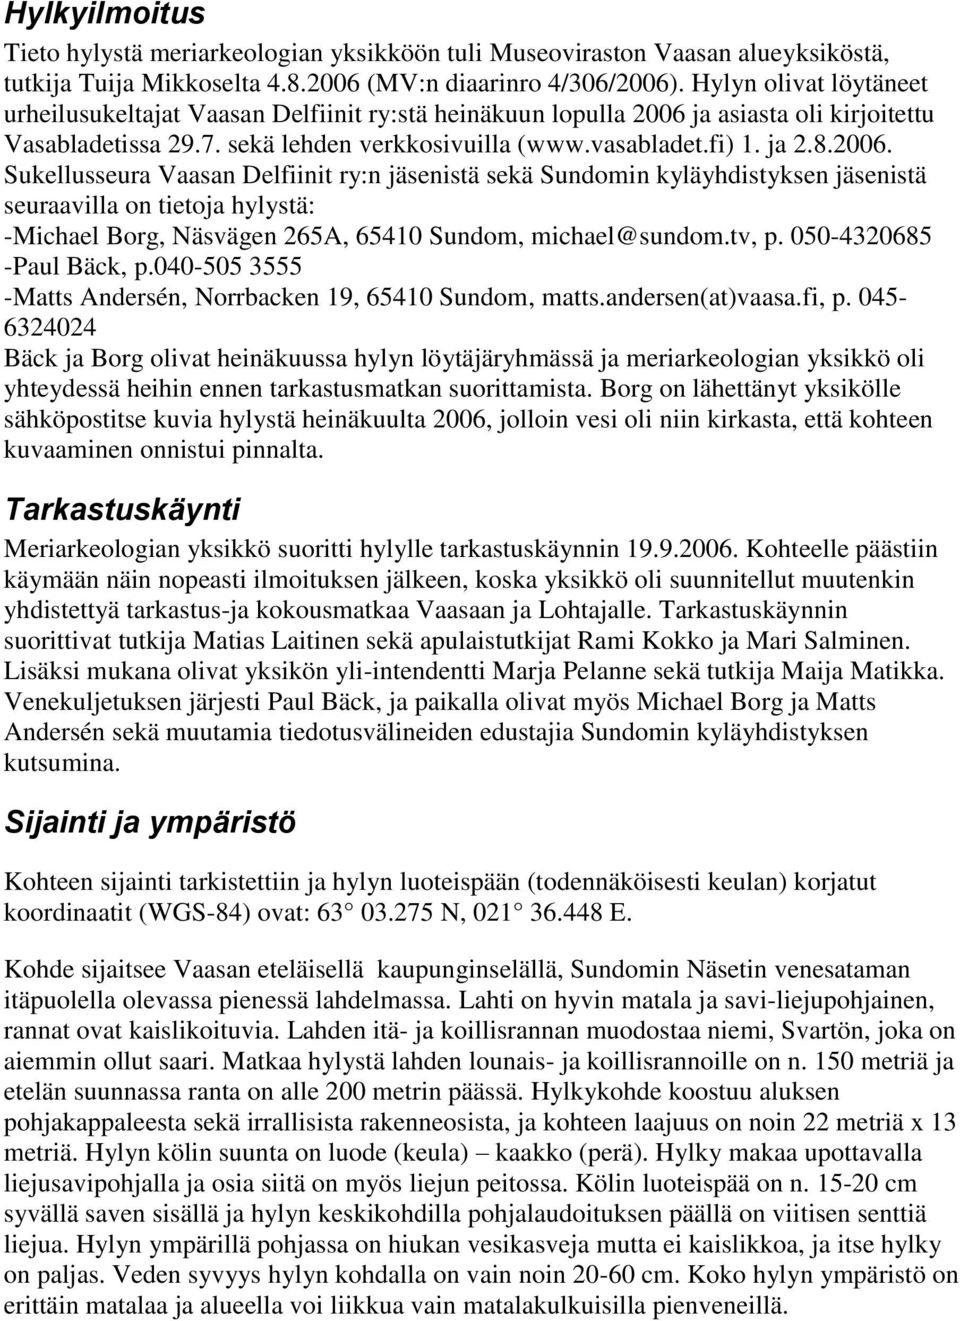 ja asiasta oli kirjoitettu Vasabladetissa 29.7. sekä lehden verkkosivuilla (www.vasabladet.fi) 1. ja 2.8.2006.